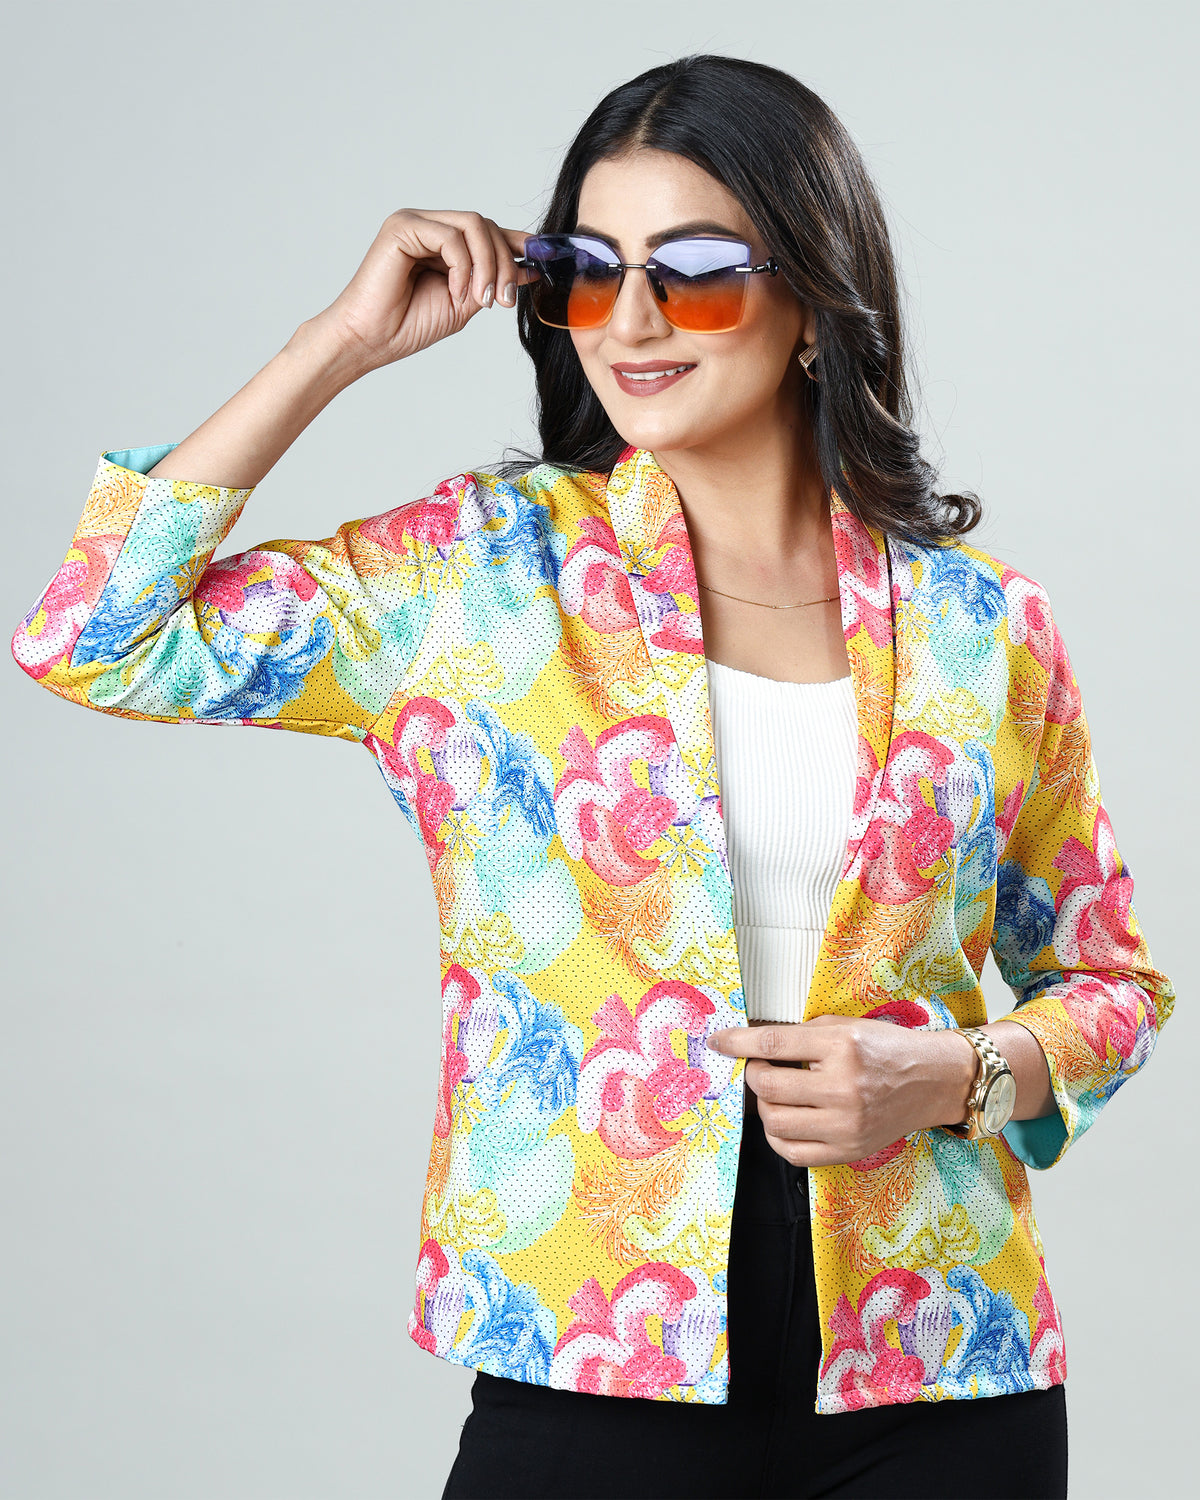 Fan Favorite: The #1 Selling Women's Floral Jacket